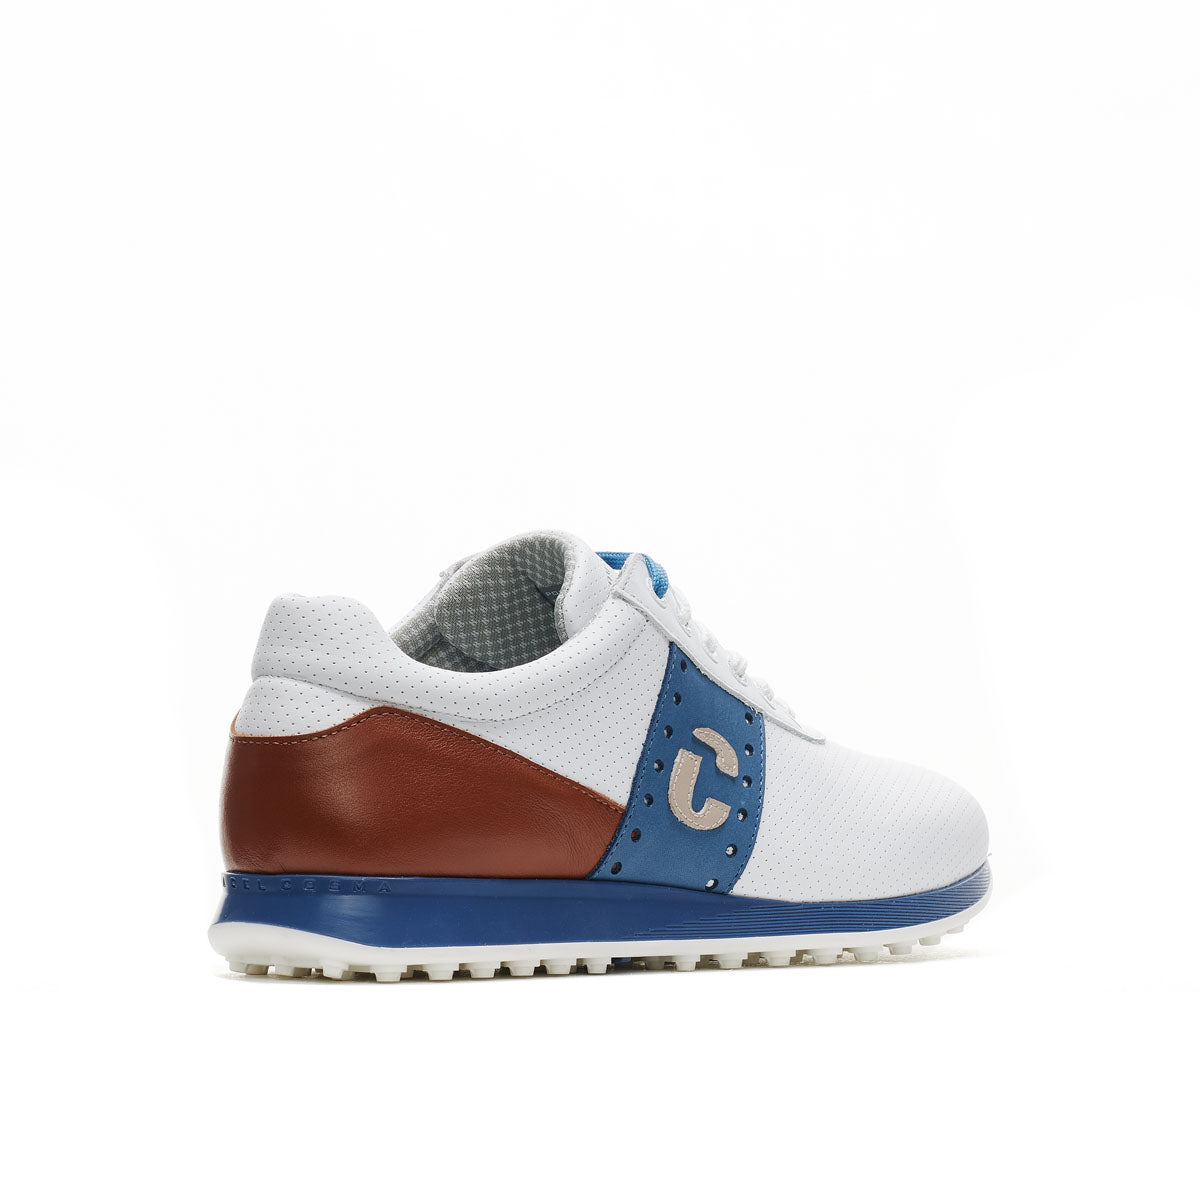 Belair White/Cognac Men's Golf Shoes